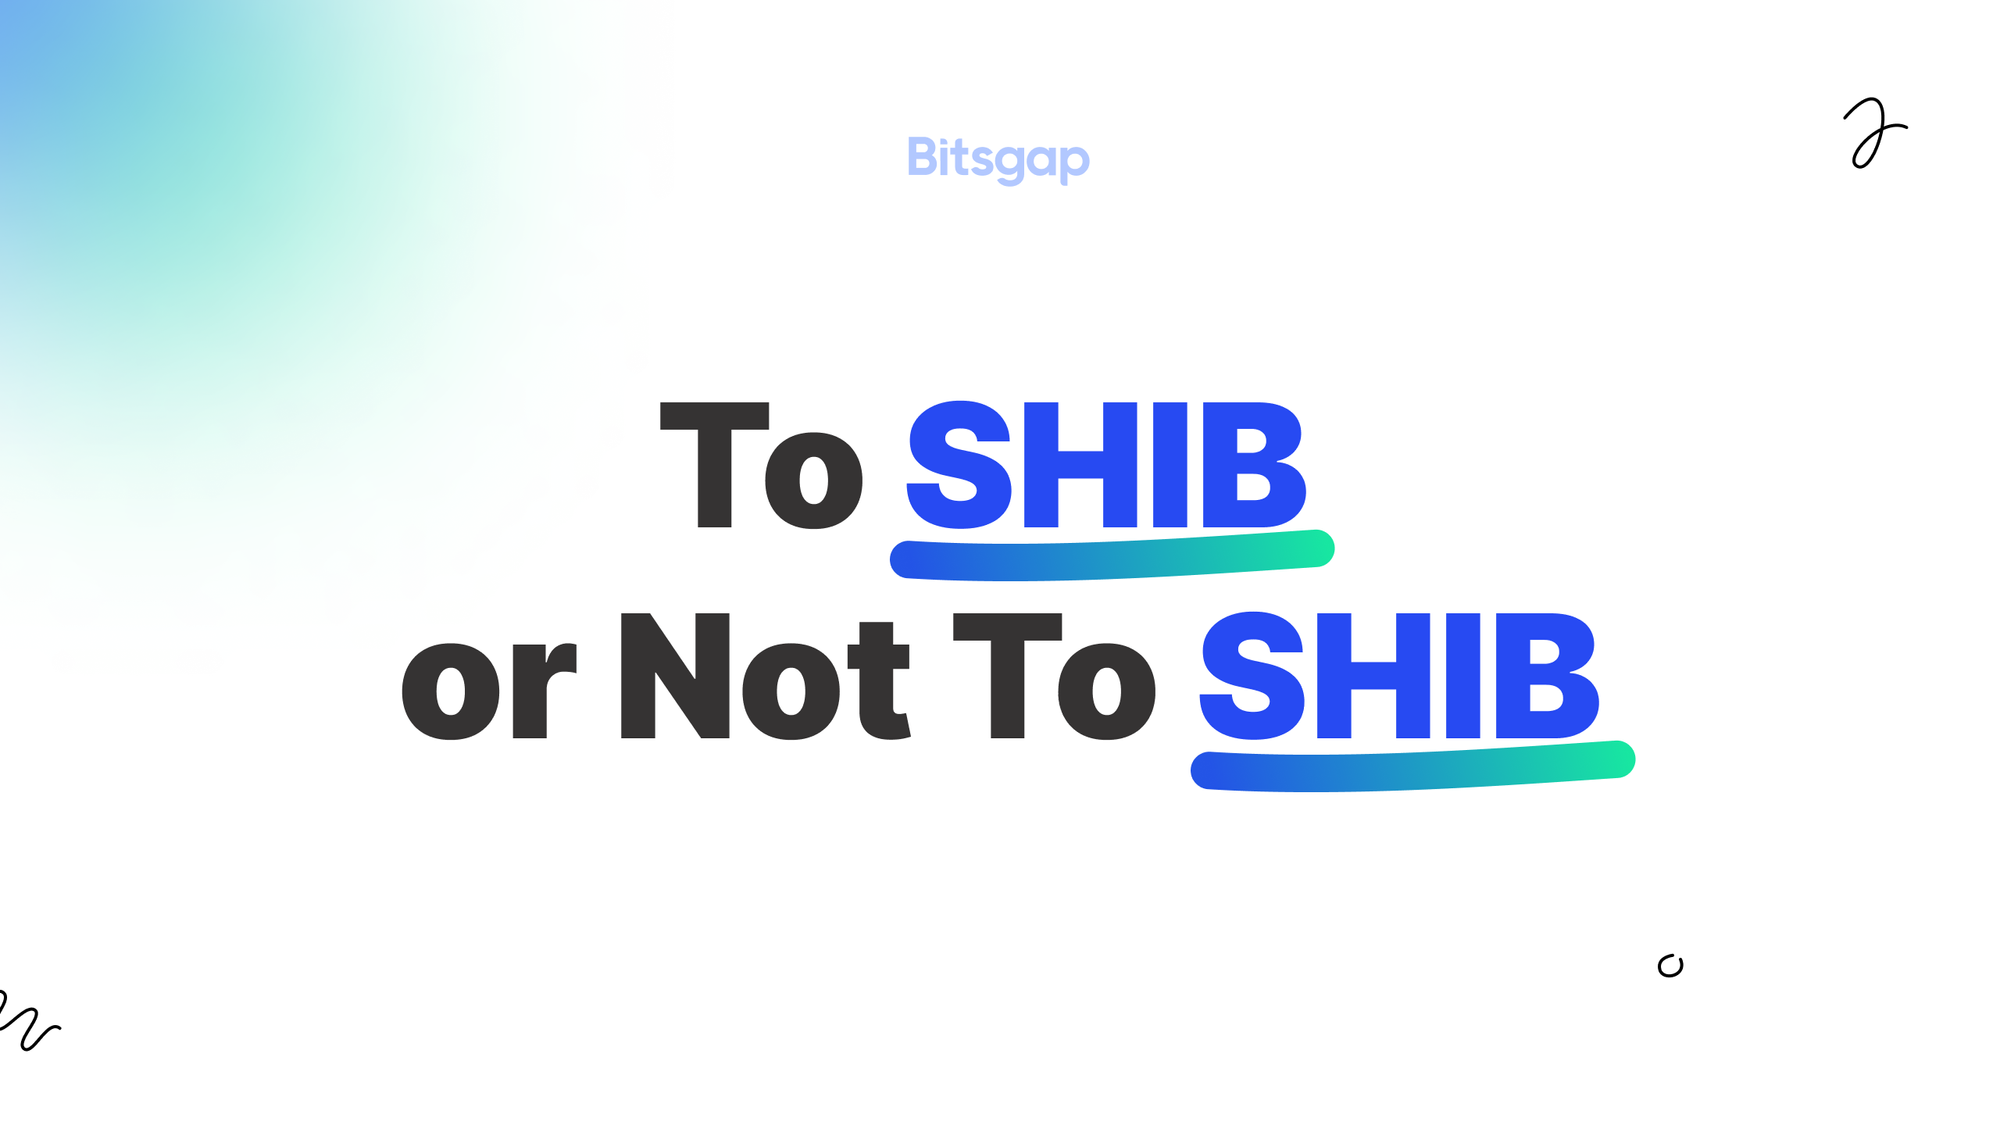 Shiba Inu (SHIB) at Crossroads: Shiba Inu Analysis